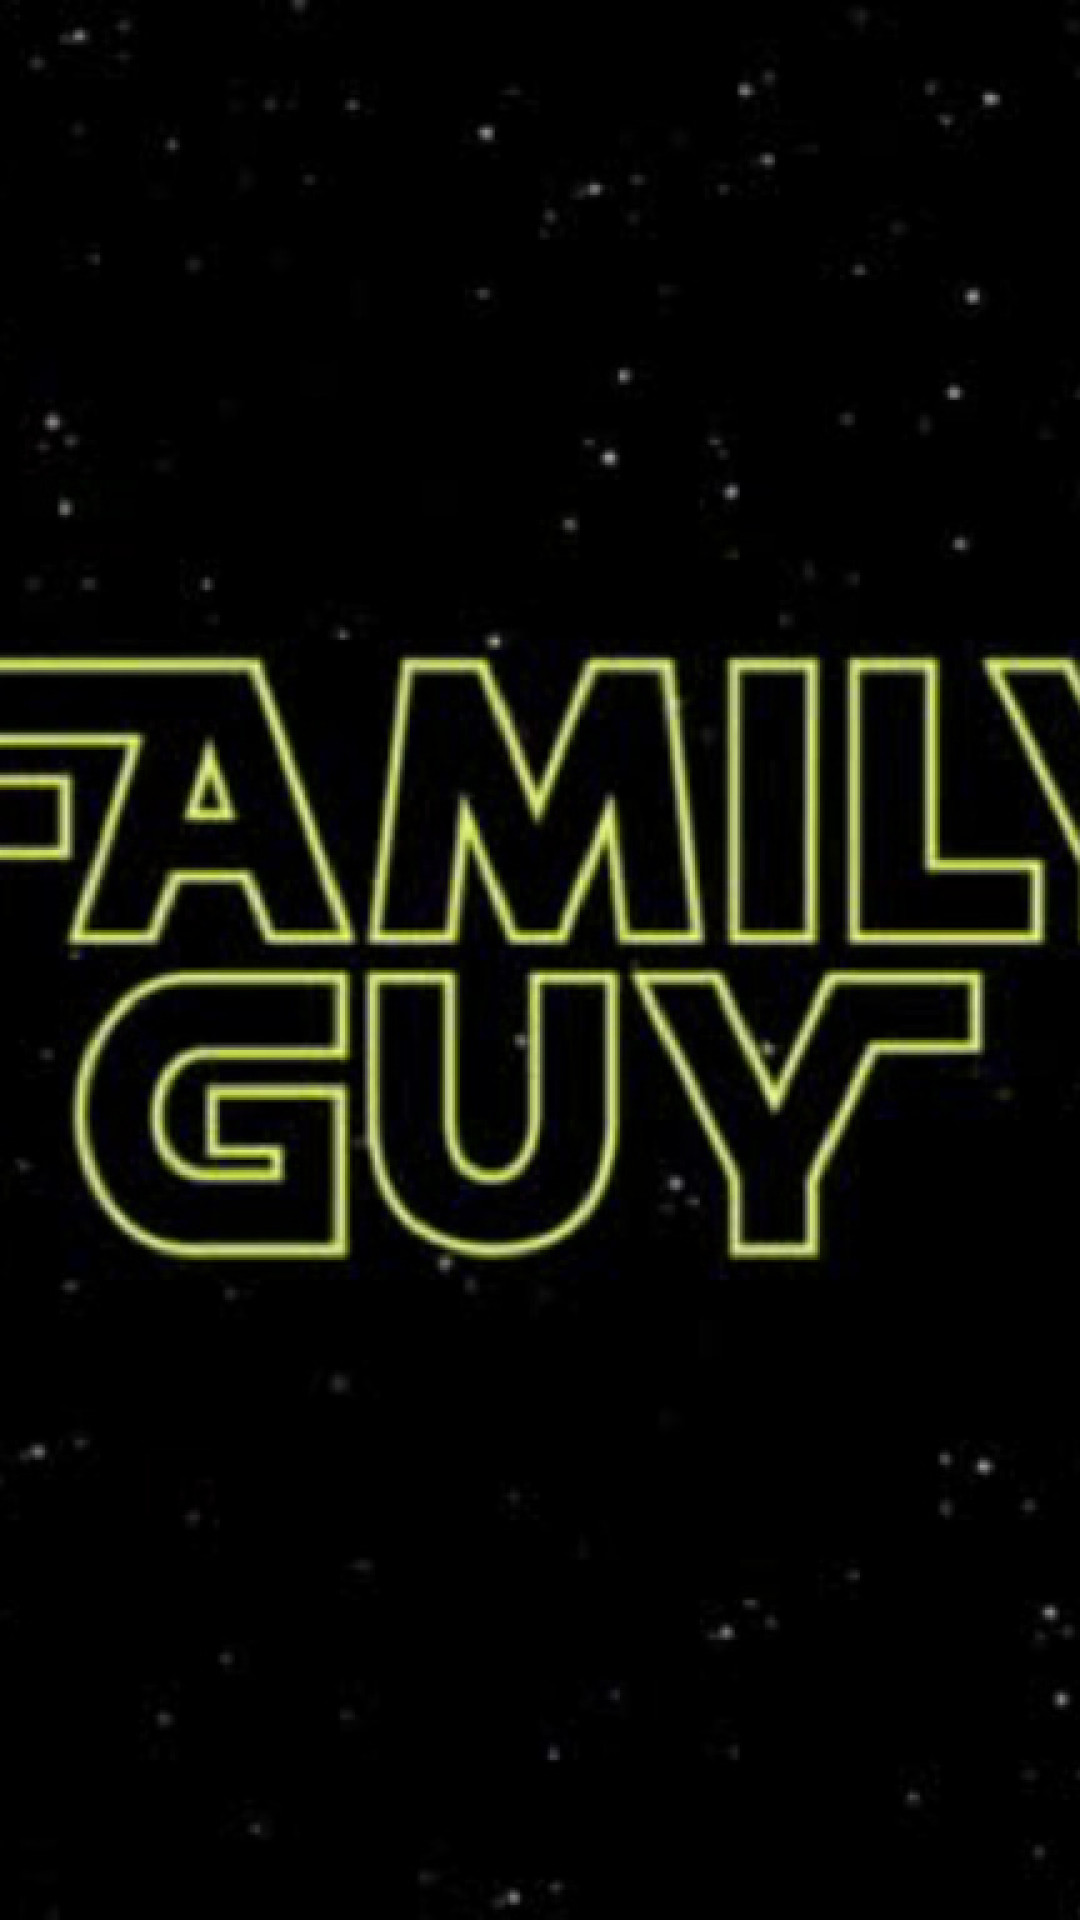 Family Guy (102).jpg